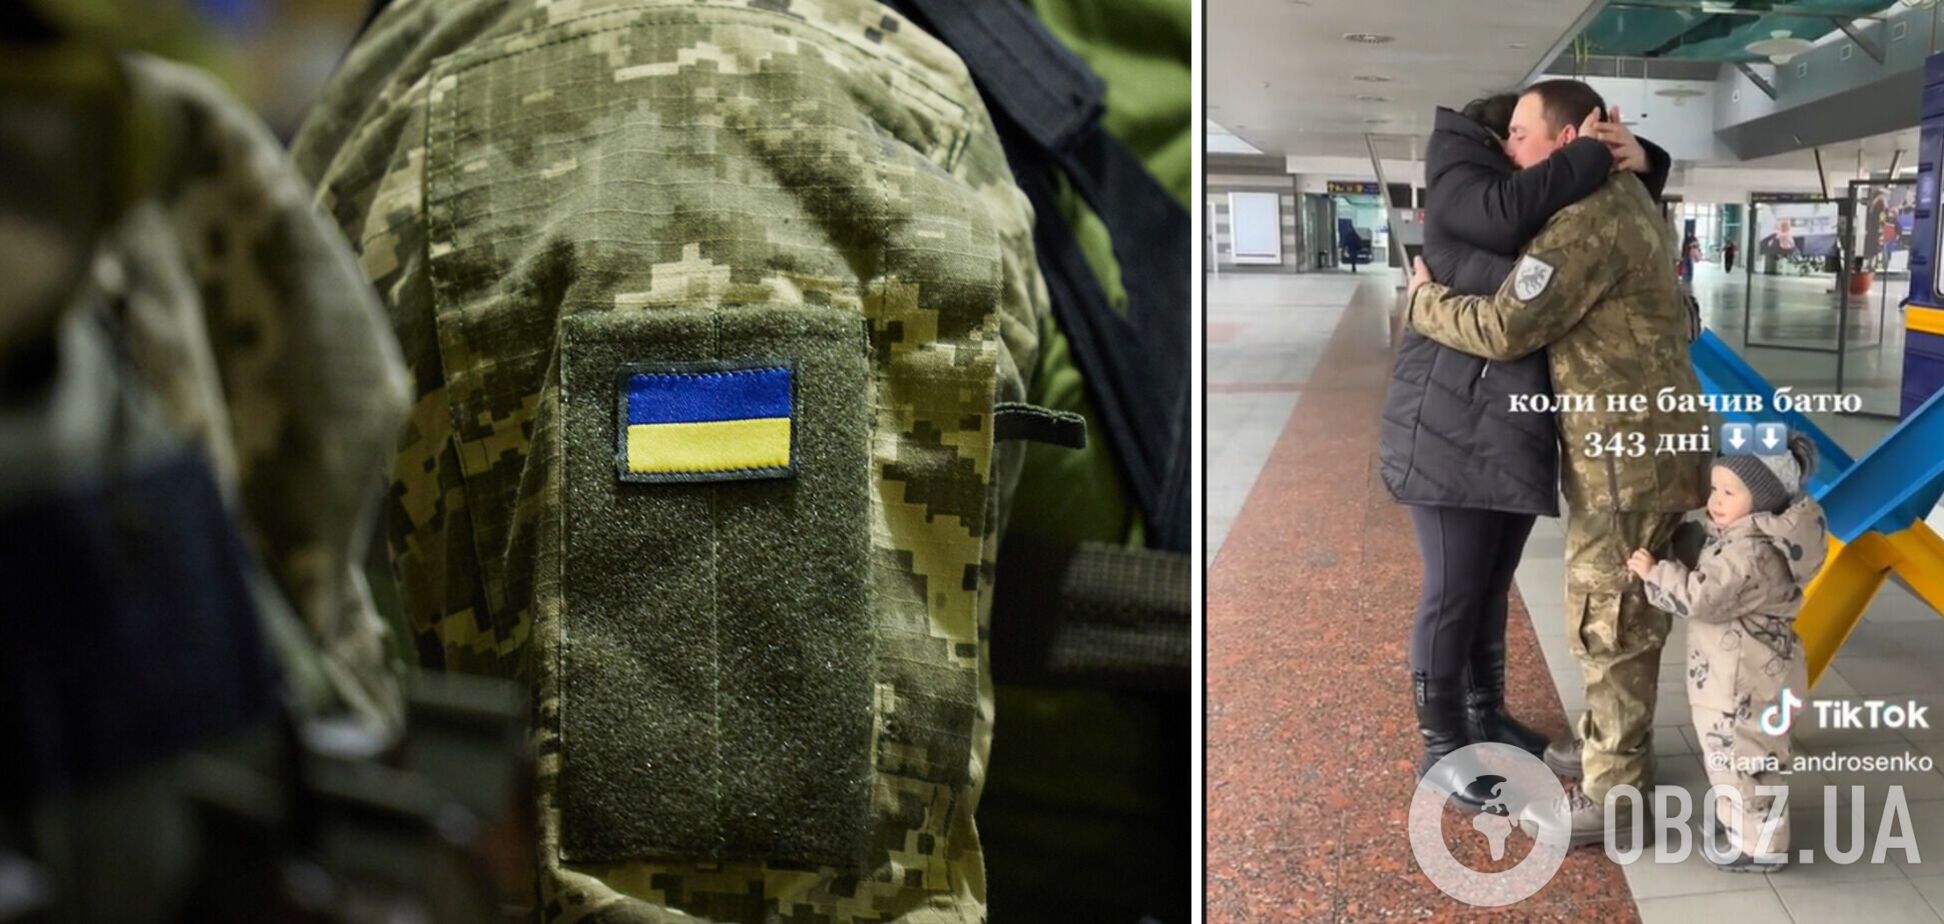 Не бачилися 343 дні: мережу зворушило відео зустрічі захисника України з рідними